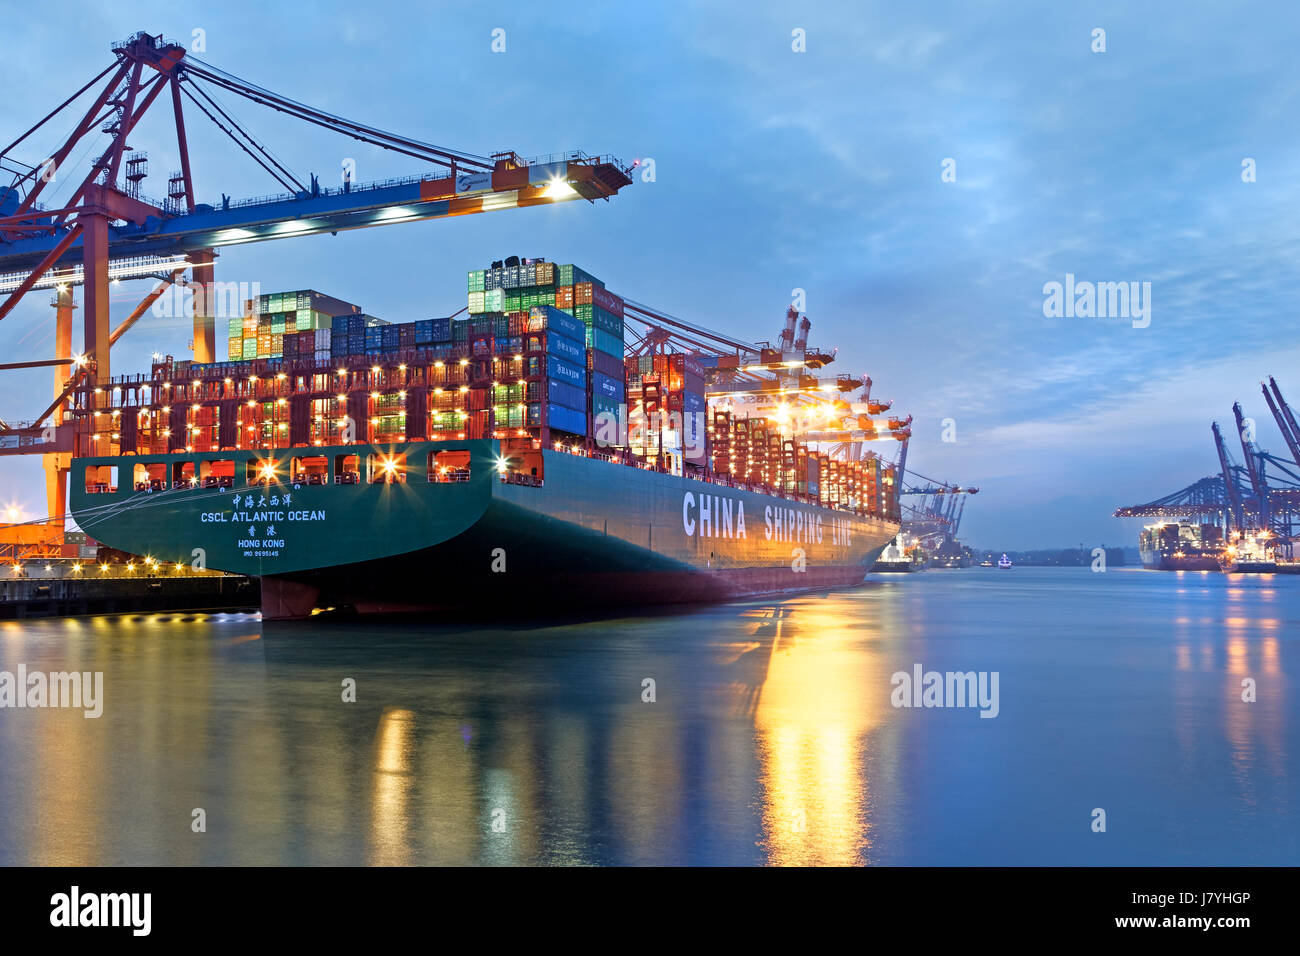 Ein Containerschiff liegt bei Nacht  im Hamburger Hafen, Containerterminal Eurogate, Hamburg, Deutschland / Container ship at night, Hamburg harbor, C Stock Photo